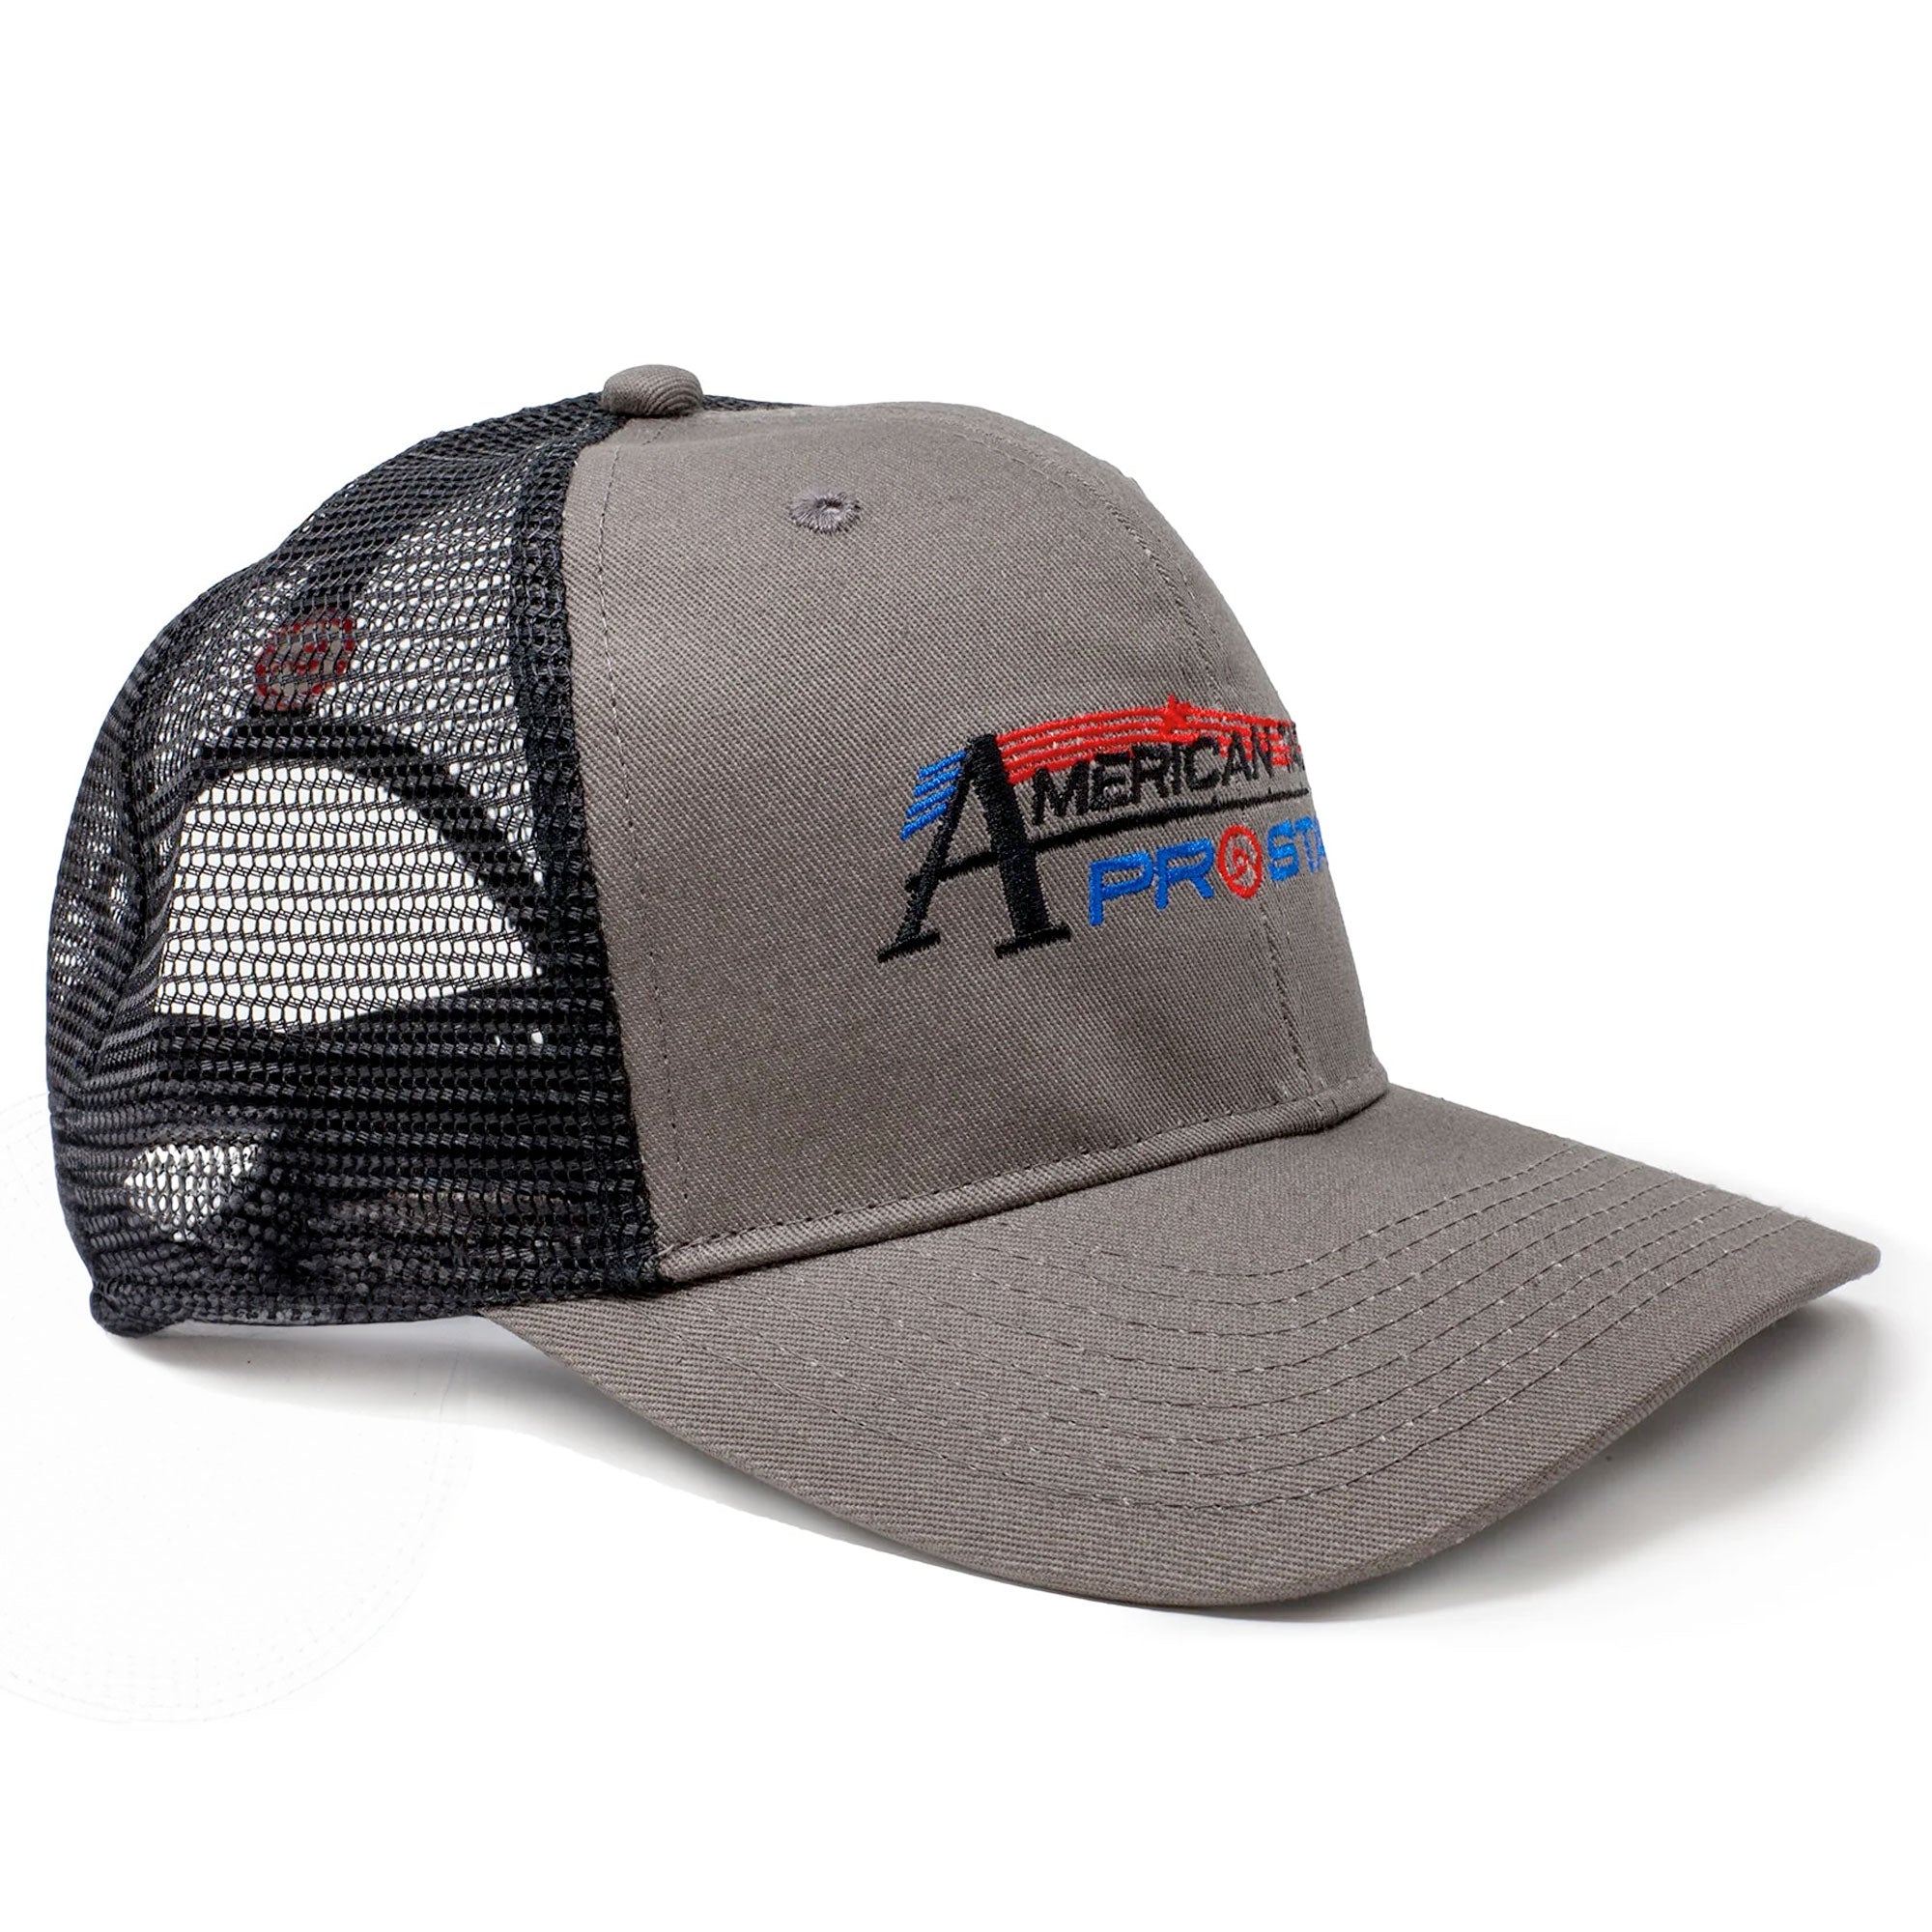 AFTCO Lemonade Trucker Hat